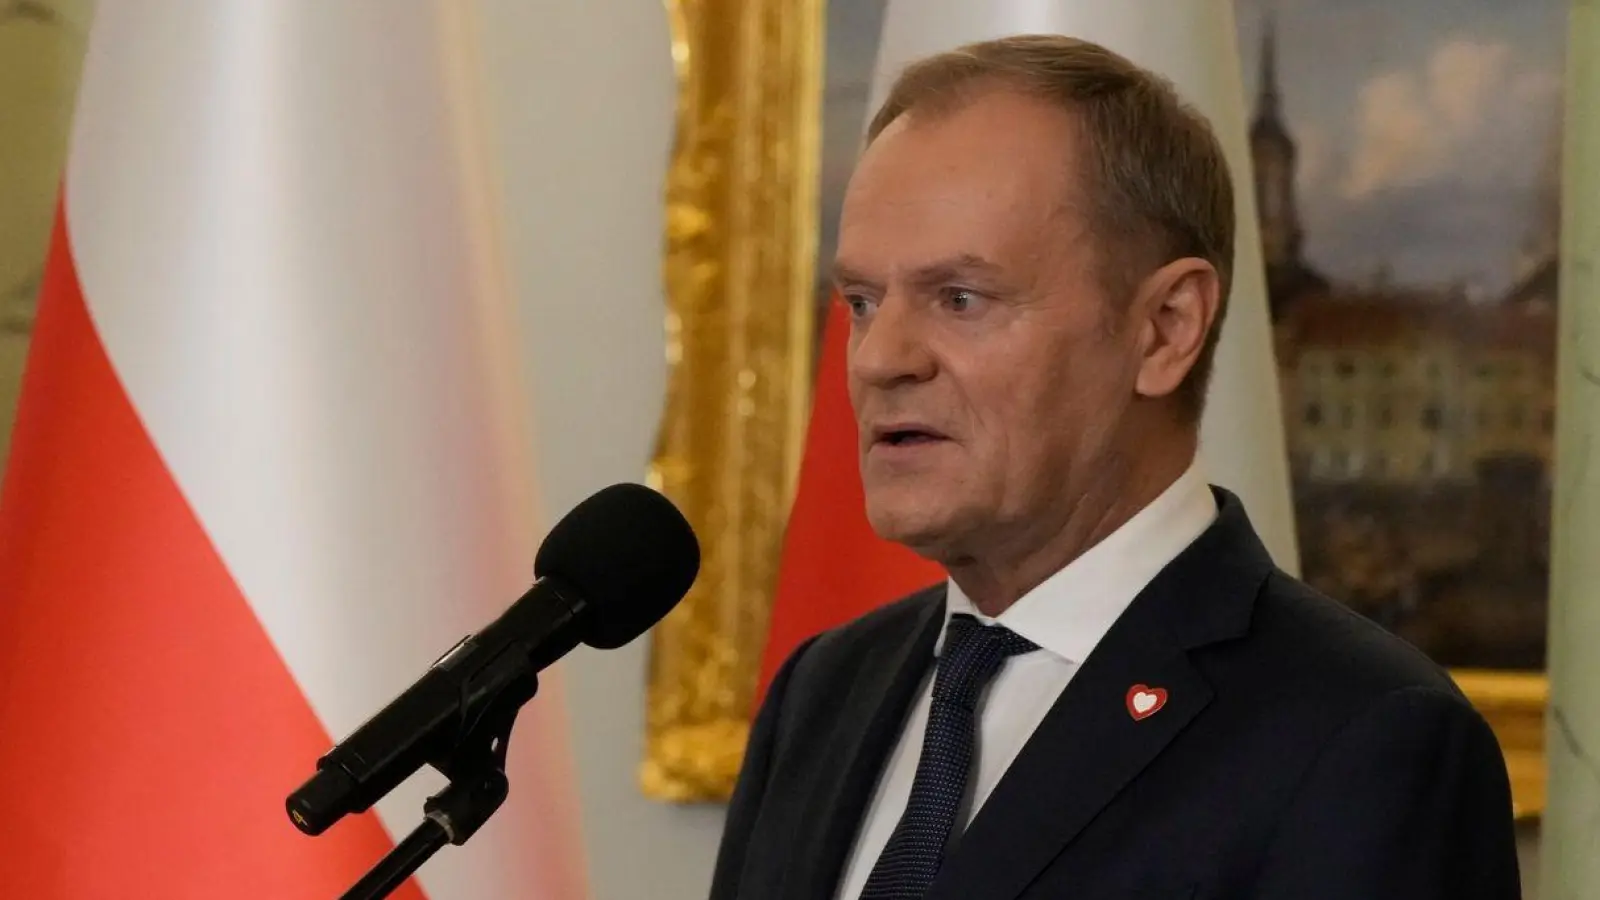 Polens Ministerpräsident Donald Tusk will das Abtreibungsrecht lockern und den Zugang zur „Pille danach“ erleichtern (Archivbild). (Foto: Czarek Sokolowski/AP/dpa)